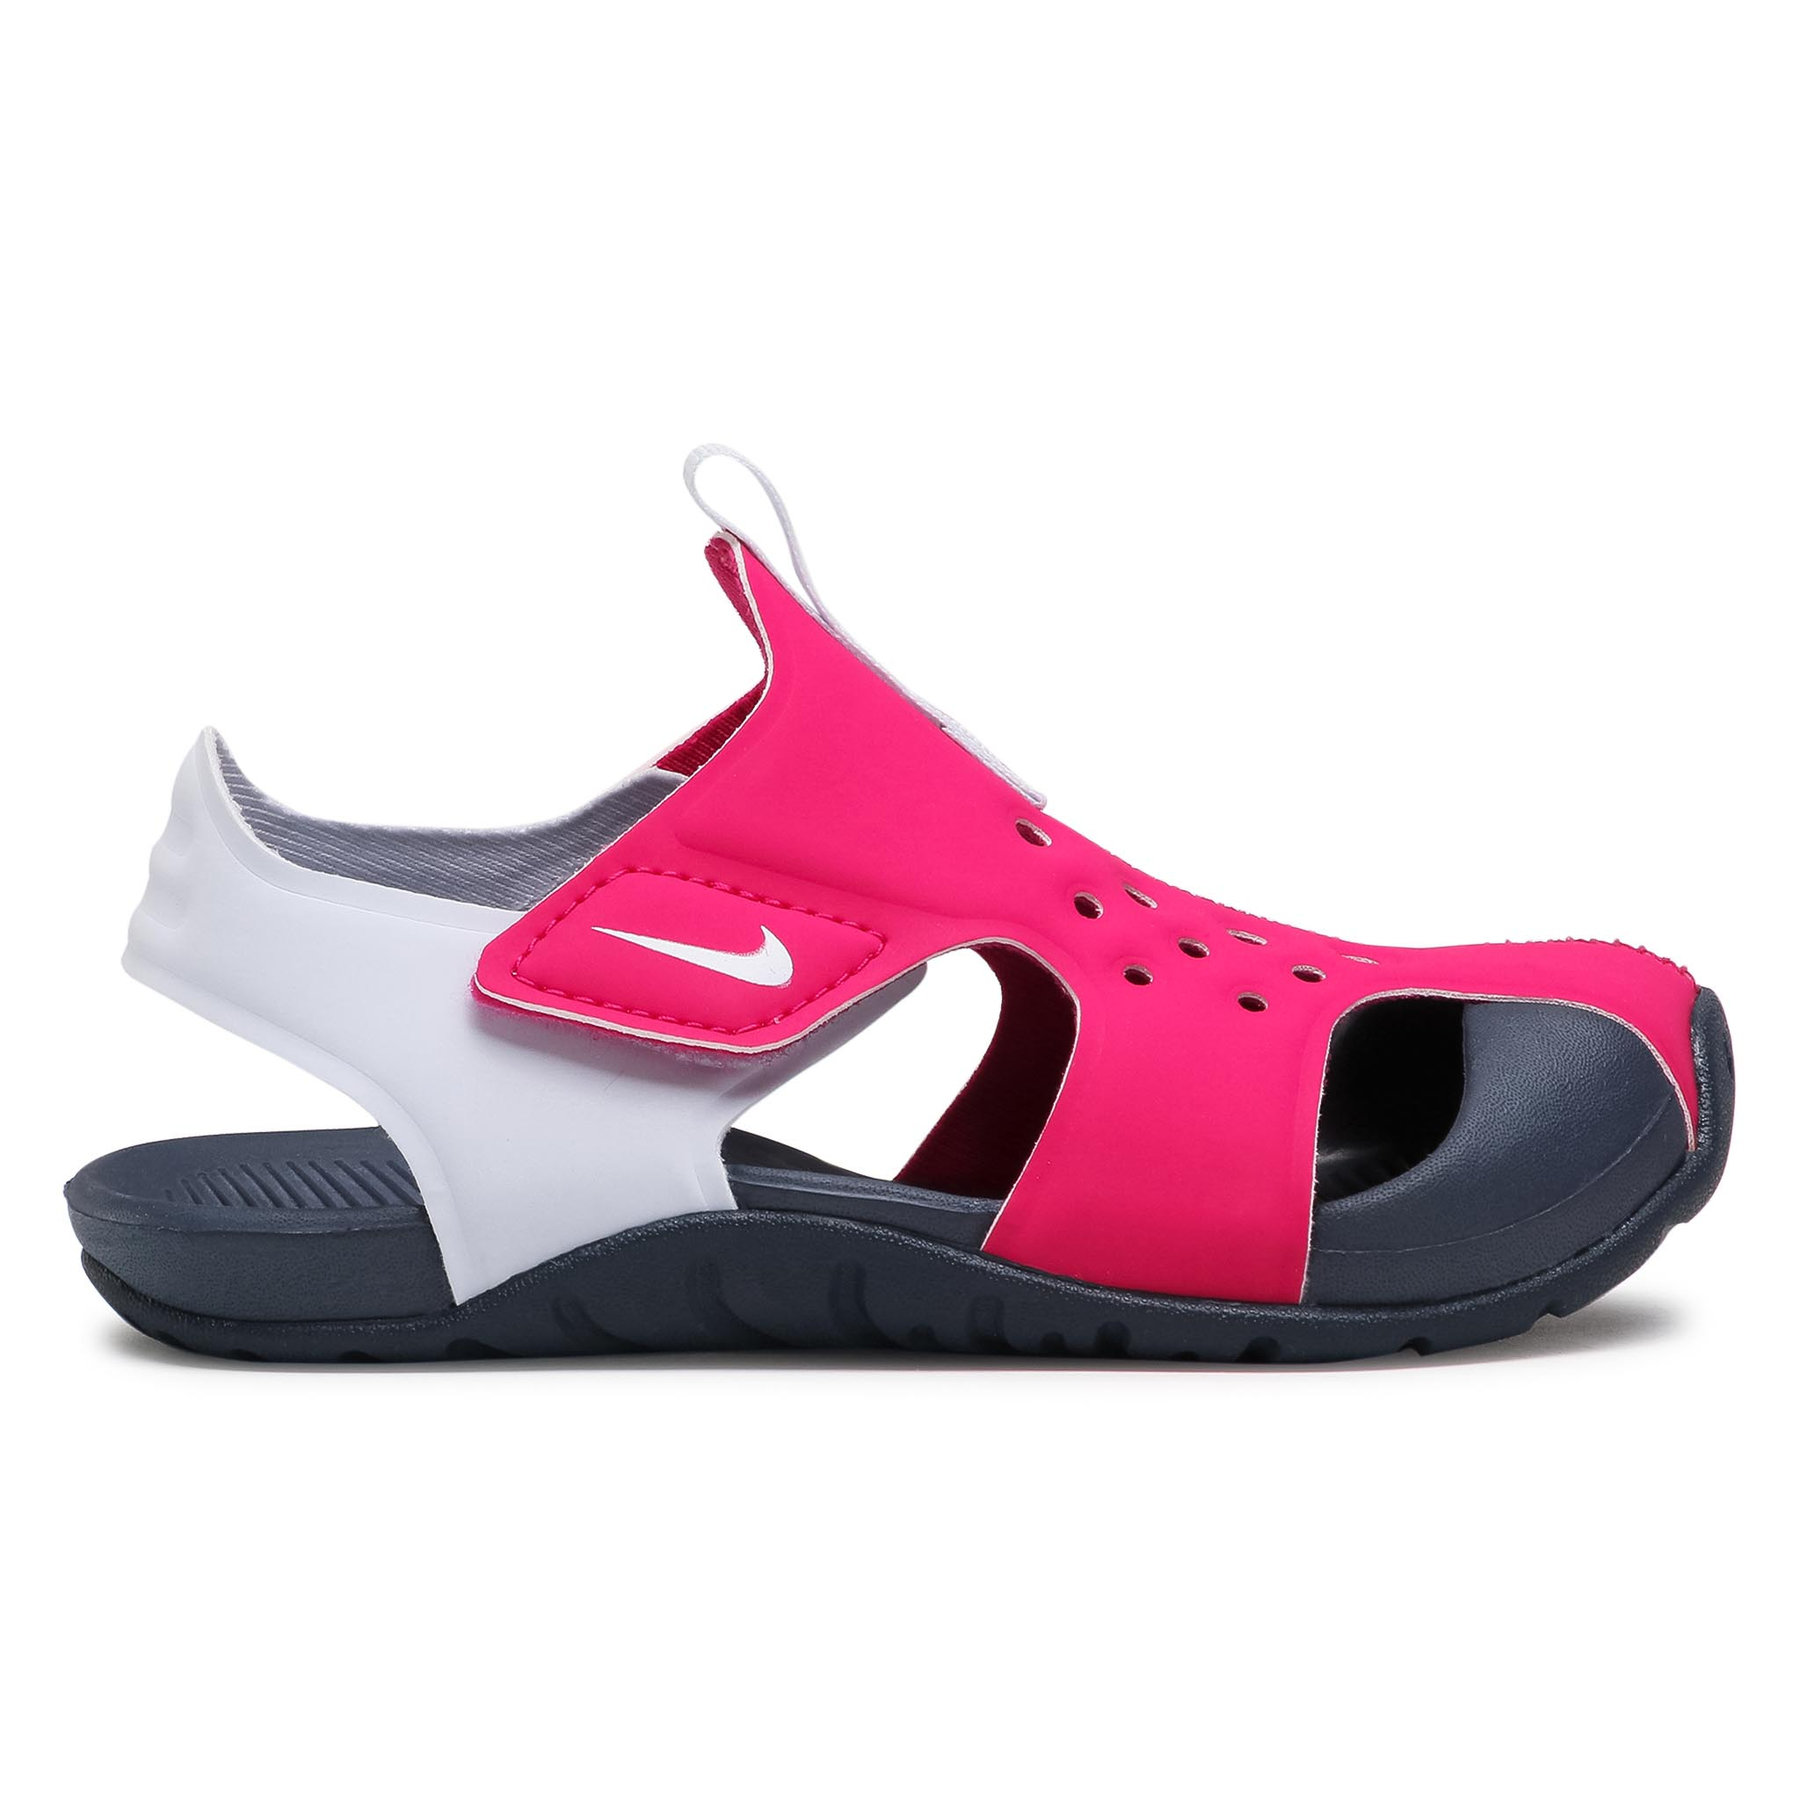 Sandale cu arici Nike Sunray Protect 2 943826-604 fetite